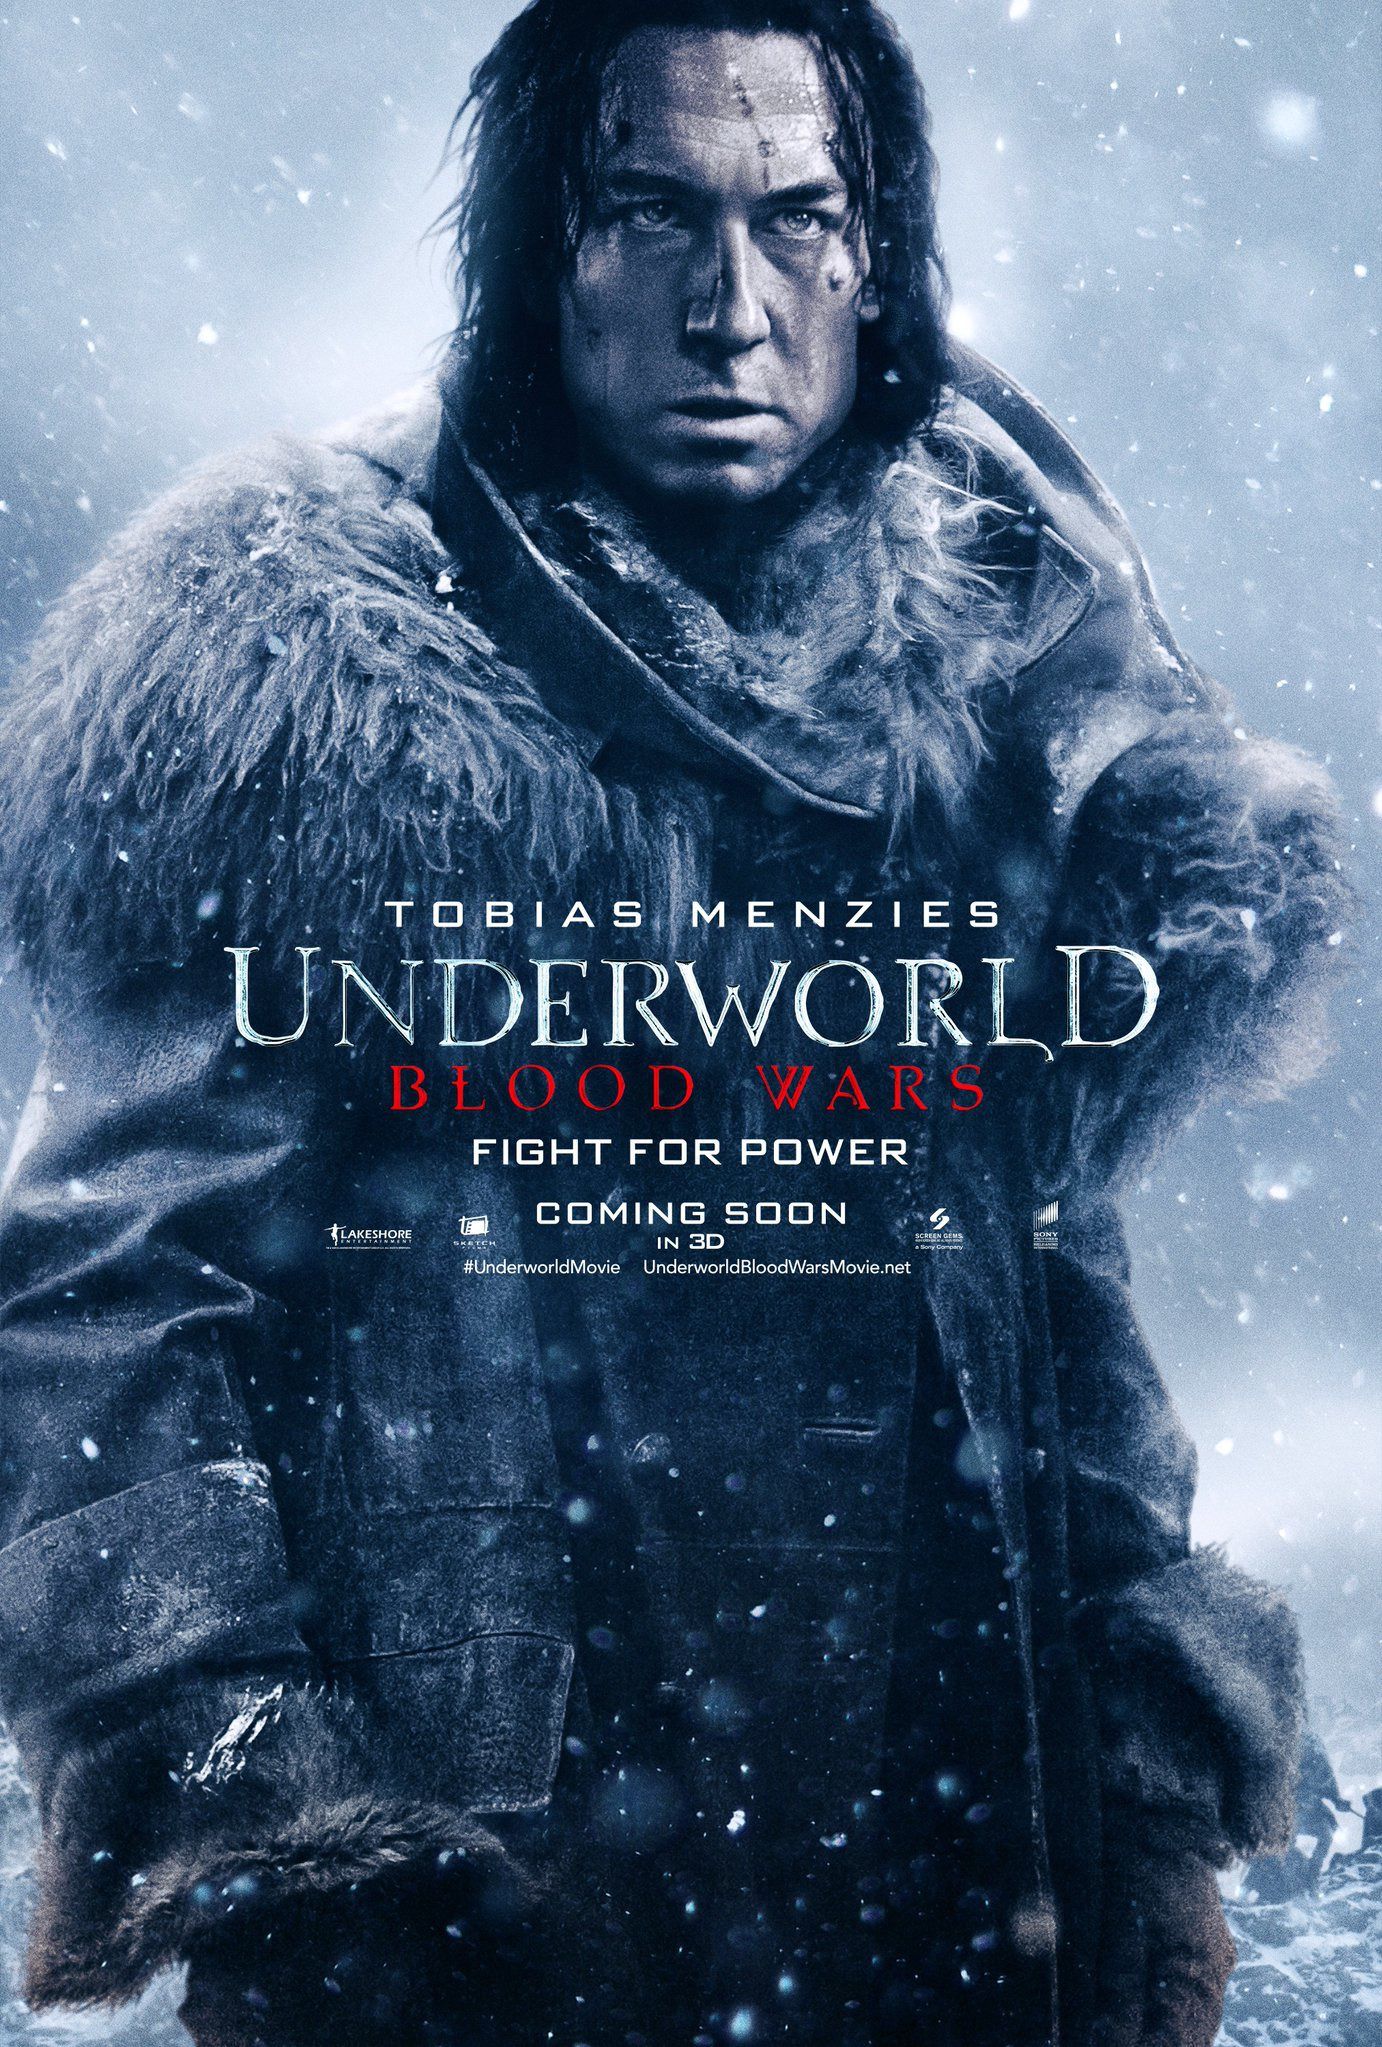 Underworld Blood Wars Tobias Menzies Poster